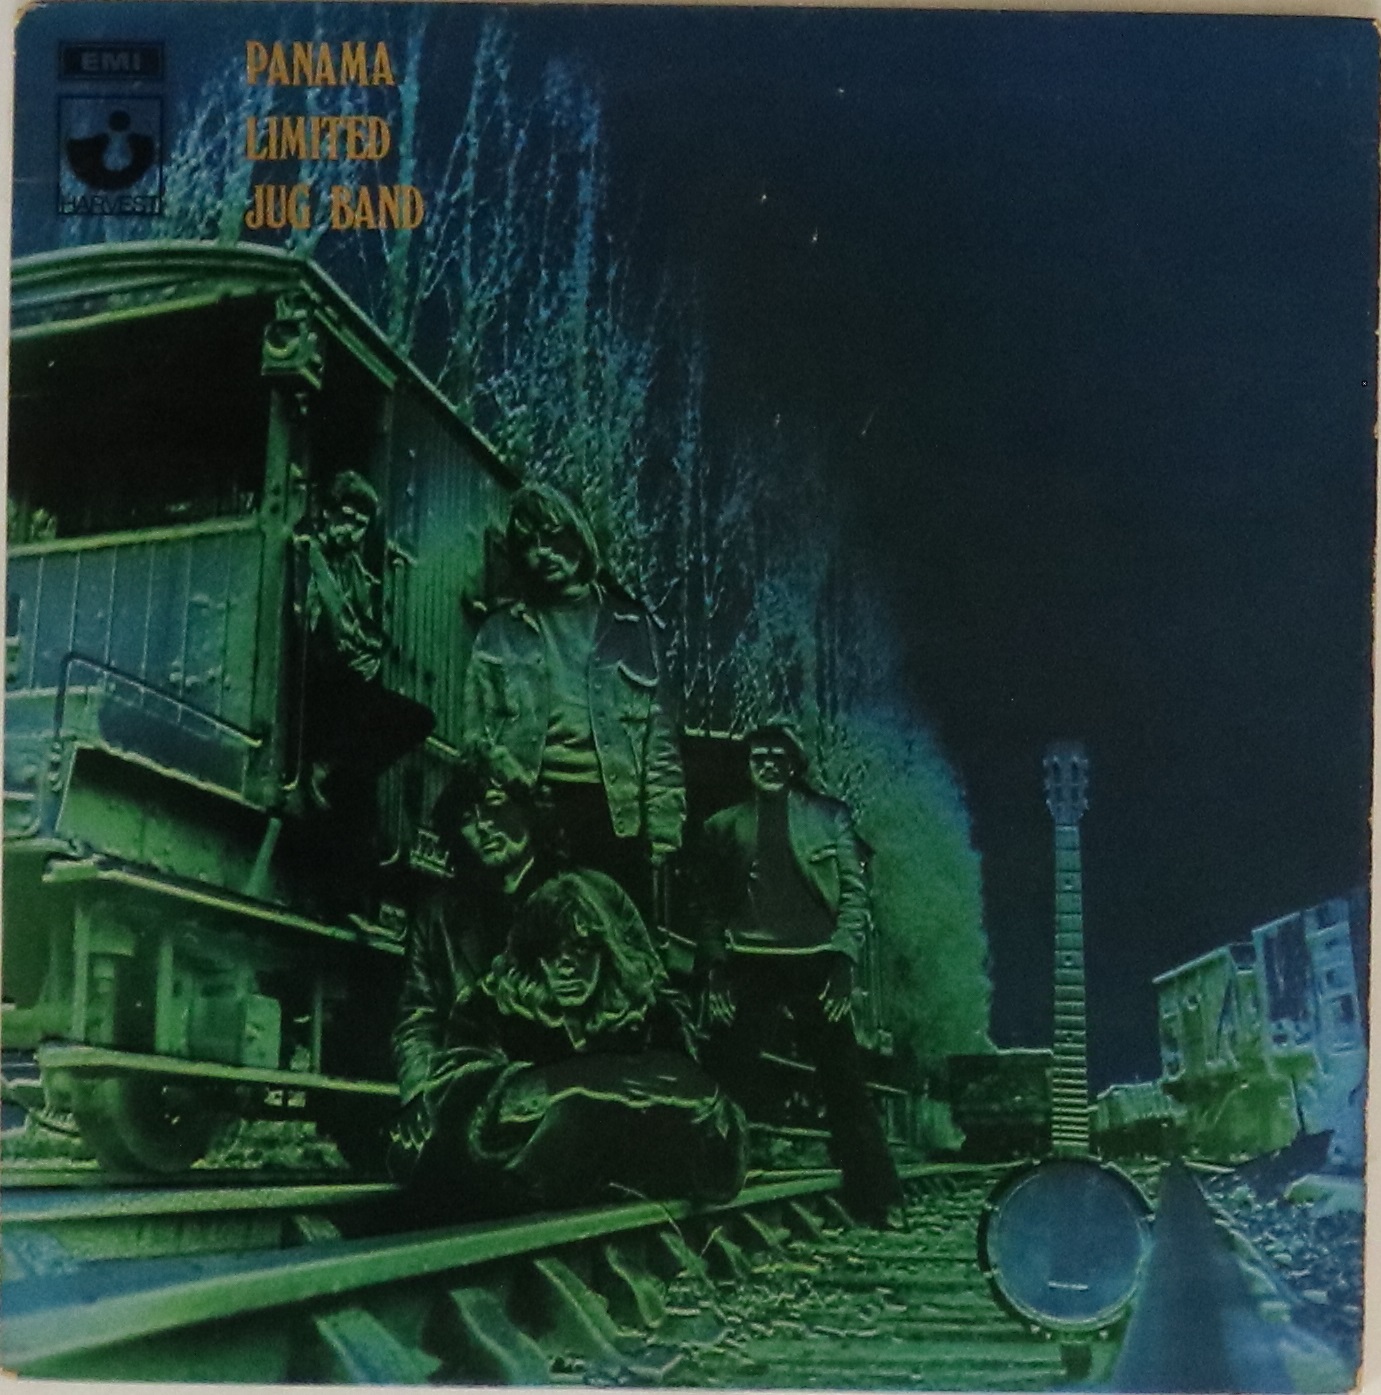 PANAMA LIMITED JUG BAND - PANAMA LIMITED JUG BAND LP (ORIGINAL UK PRESSING - HARVEST SHVL 753).